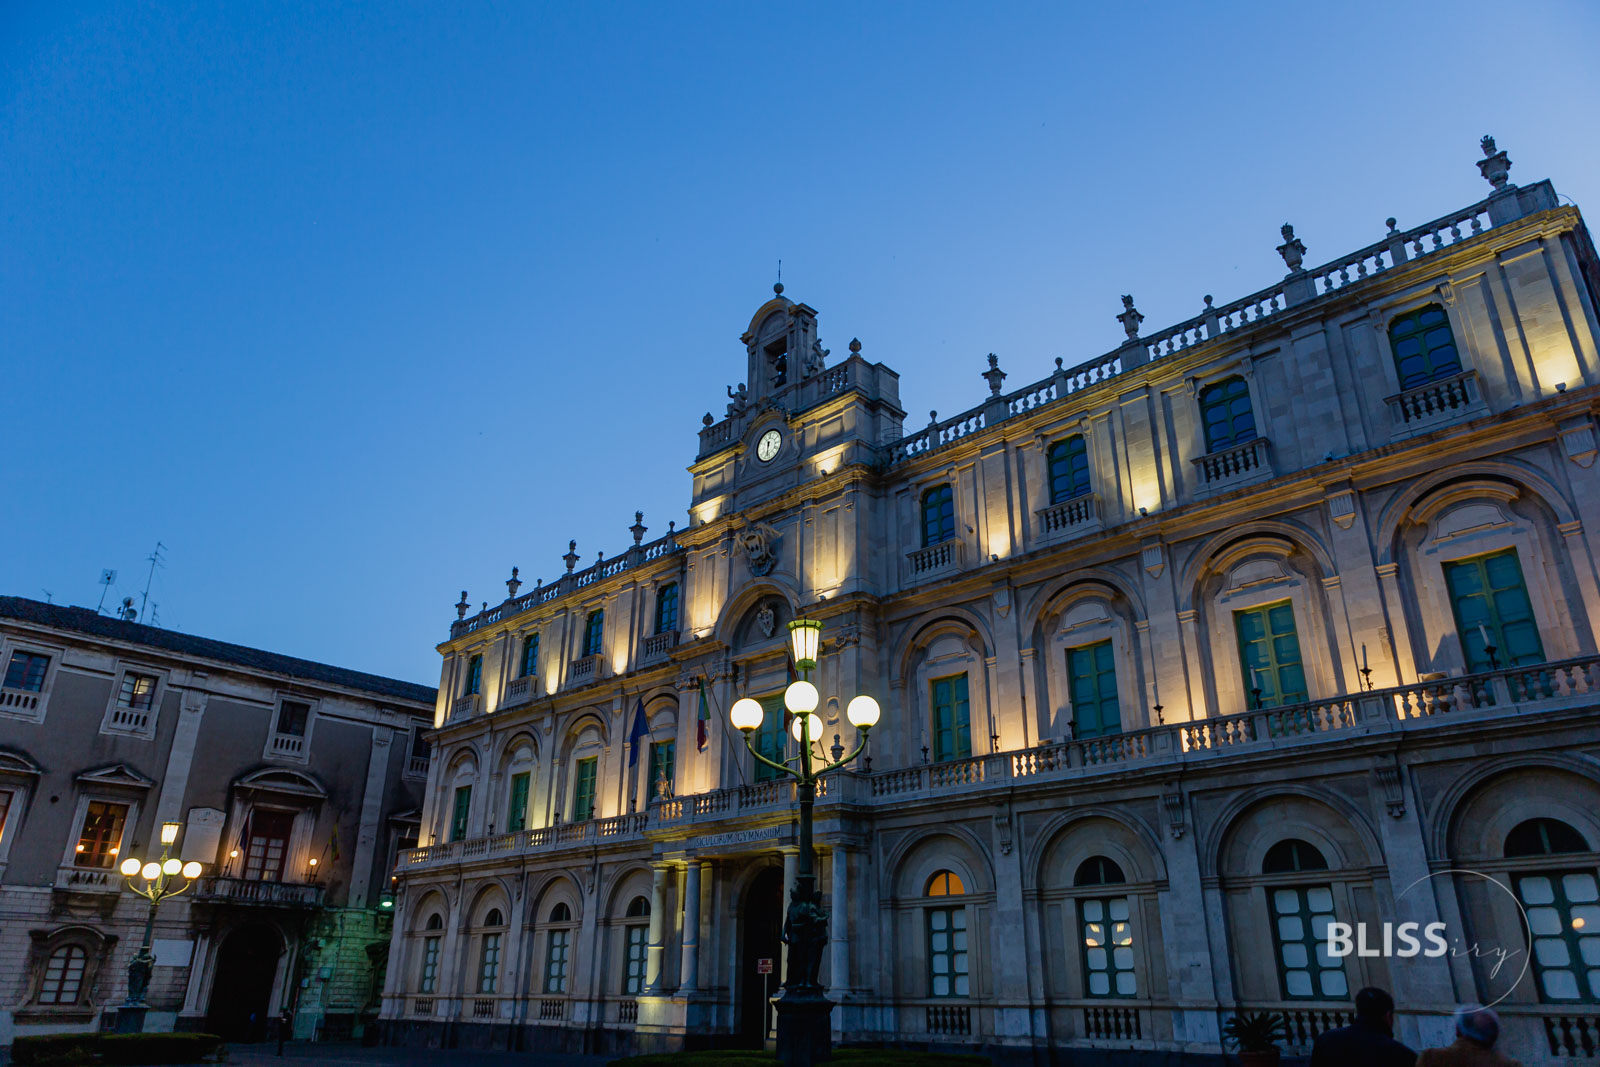 Sehenswürdigkeiten Catania auf Sizilien - Stadtrundgang